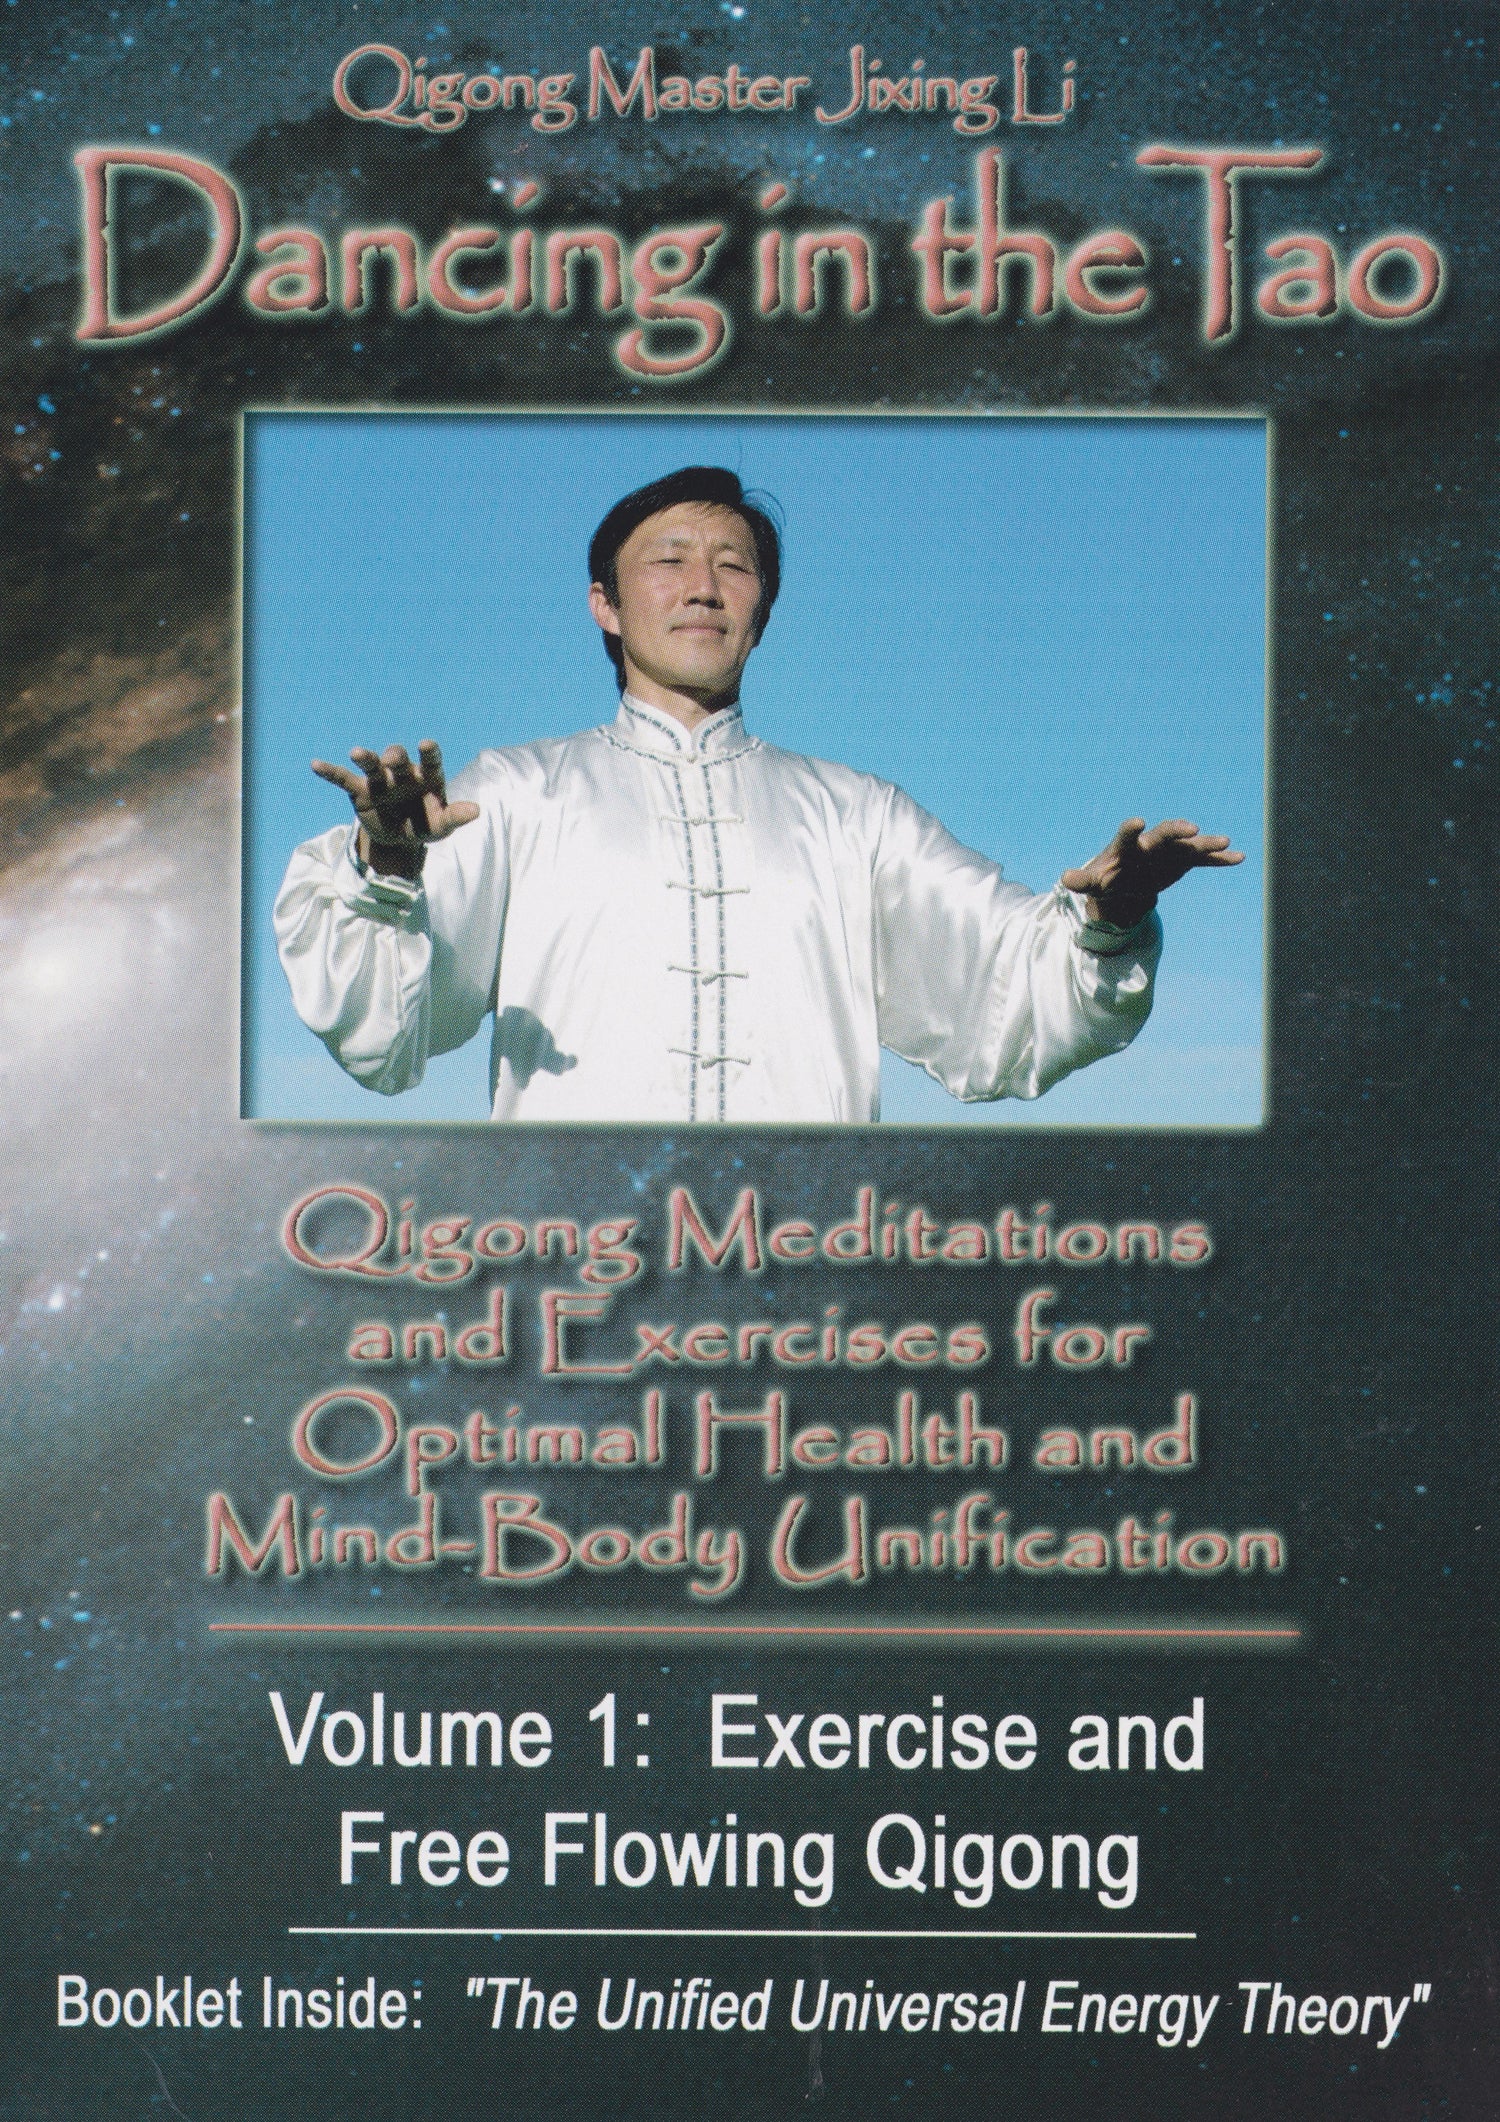 Dancing in the Tao Qigong DVD & Booklet by Jixing Li